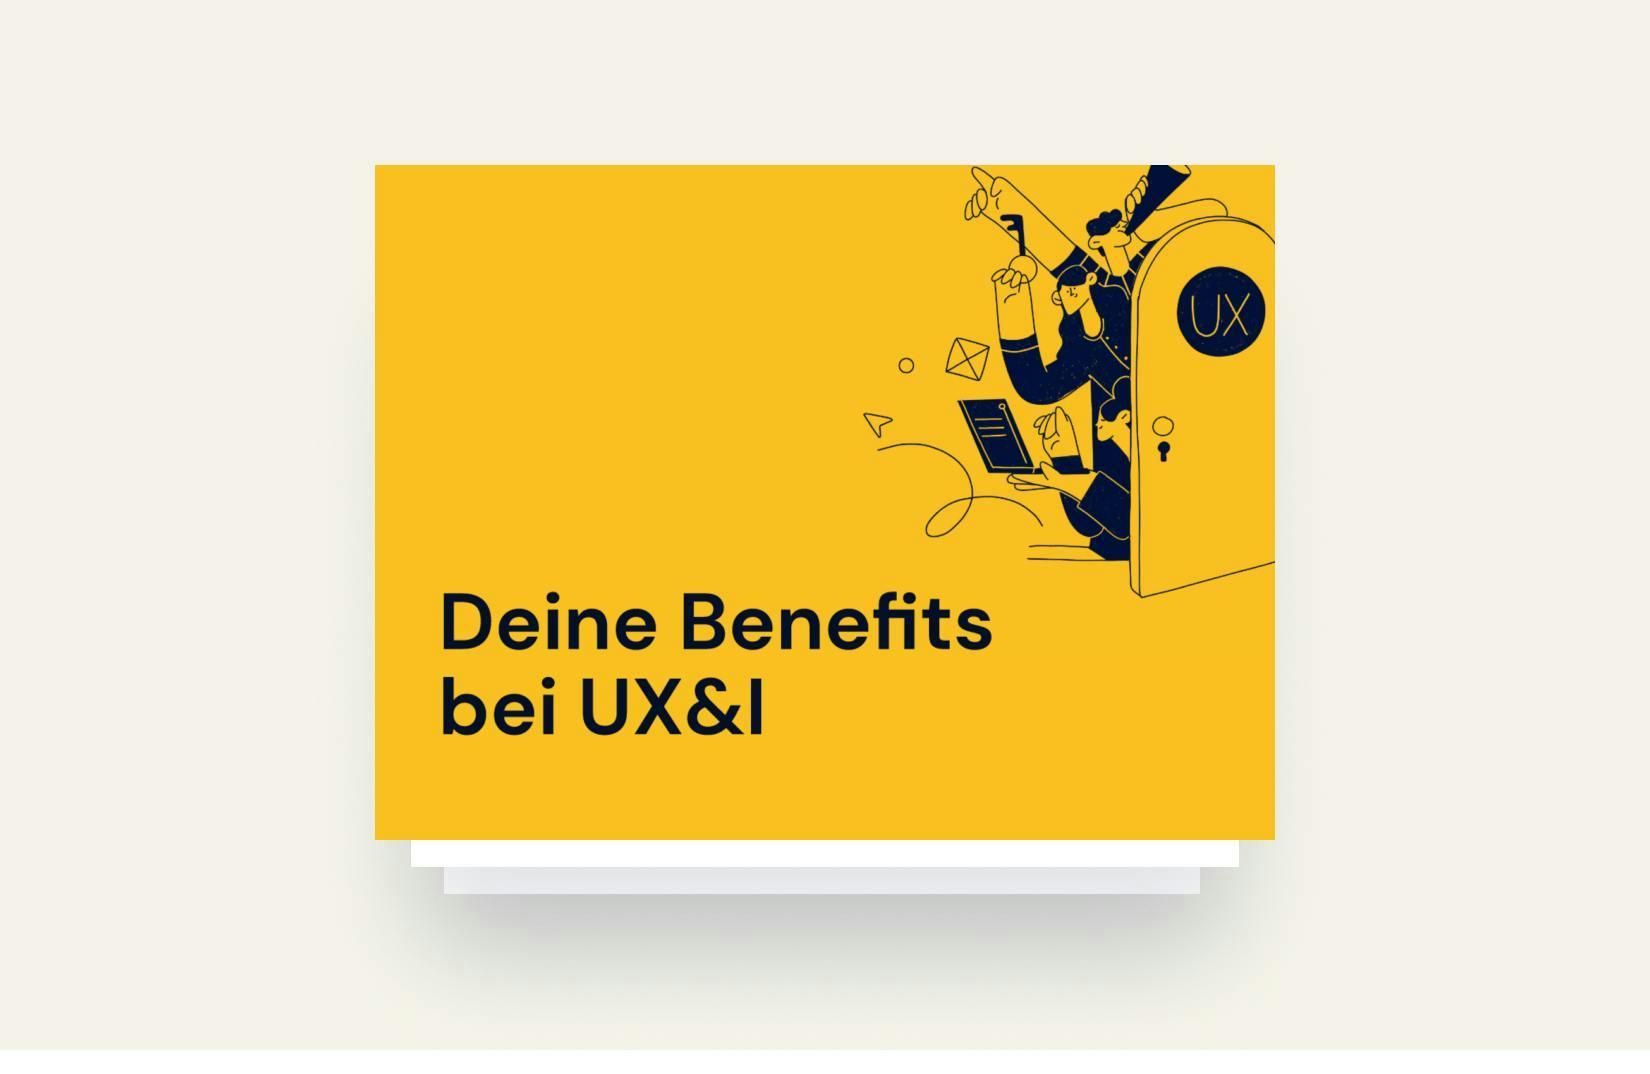 Benefits bei UX&I